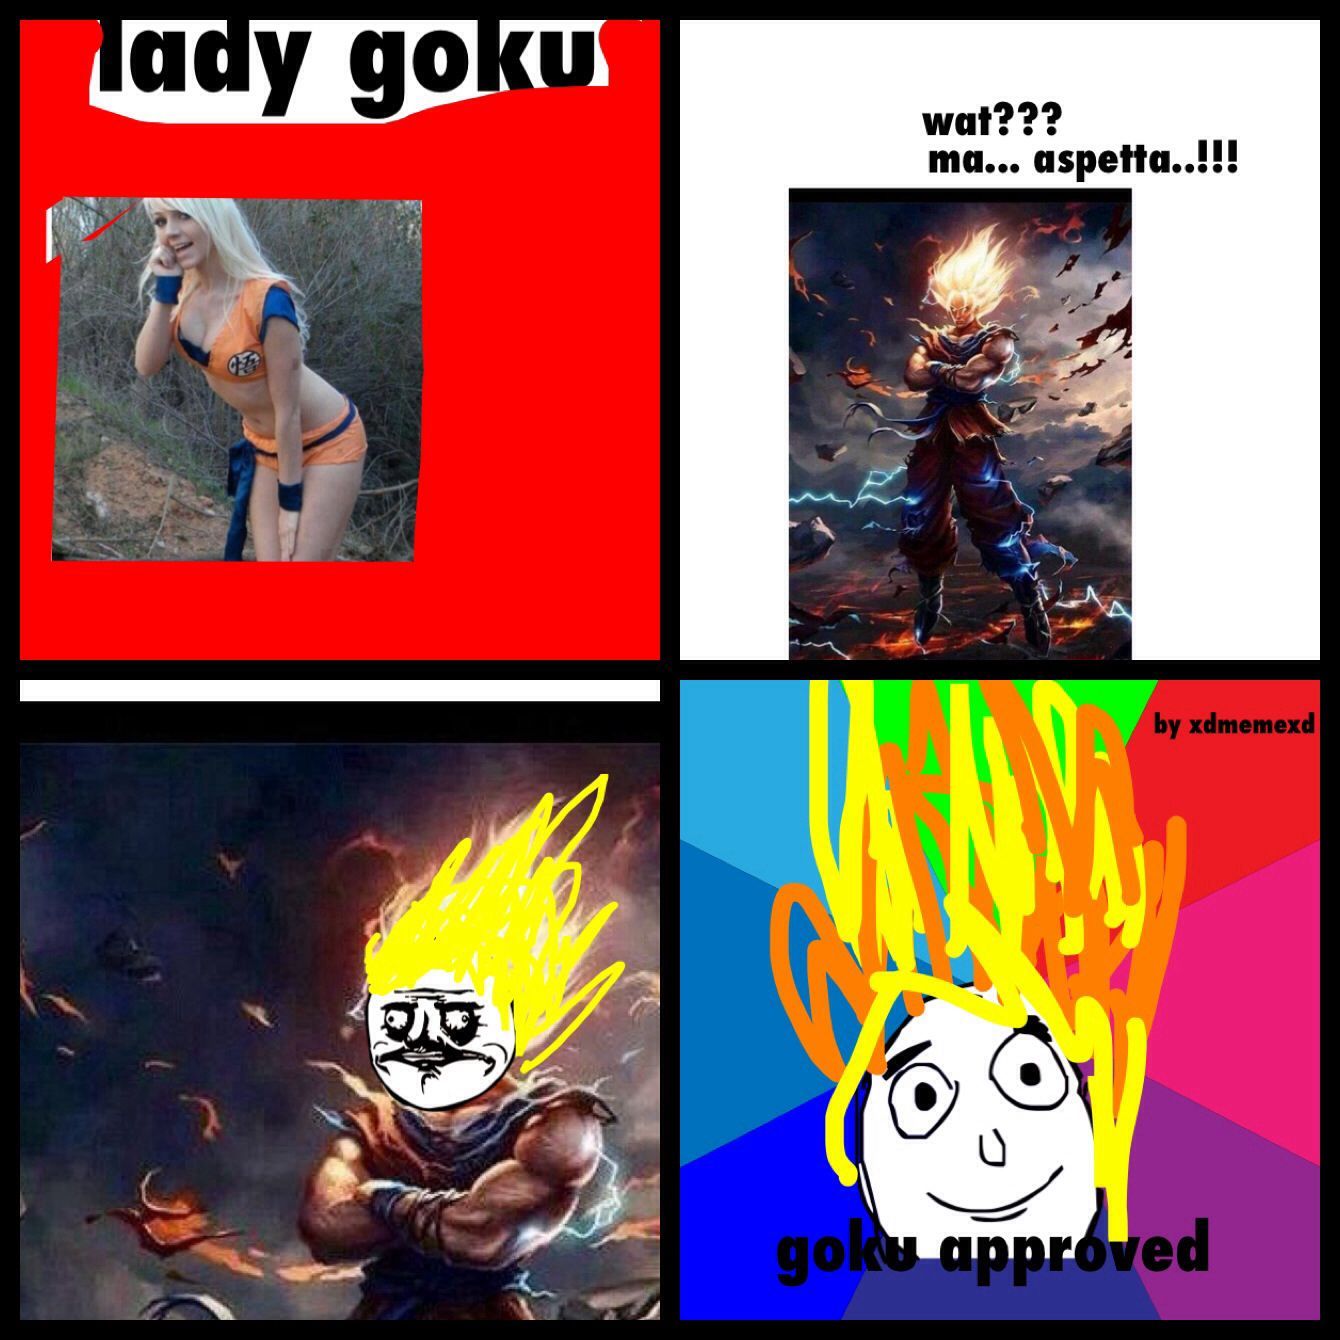 Goku approvas xd - meme